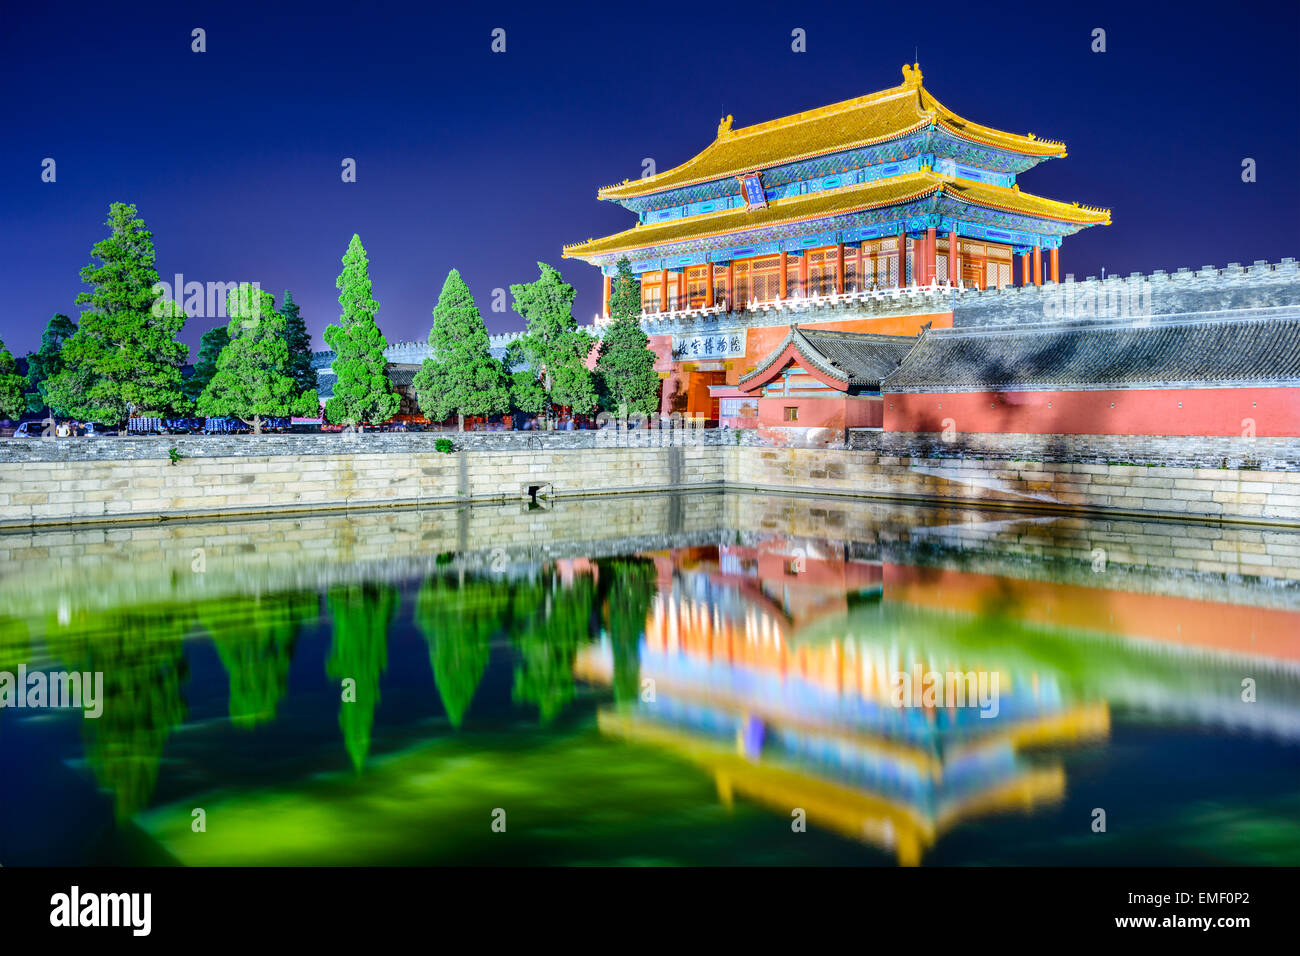 Peking, China am Tor der göttlichen könnte, das nördliche Tor der verbotenen Stadt. (Obere Tablet liest "Tor der göttlichen Macht" Stockfoto